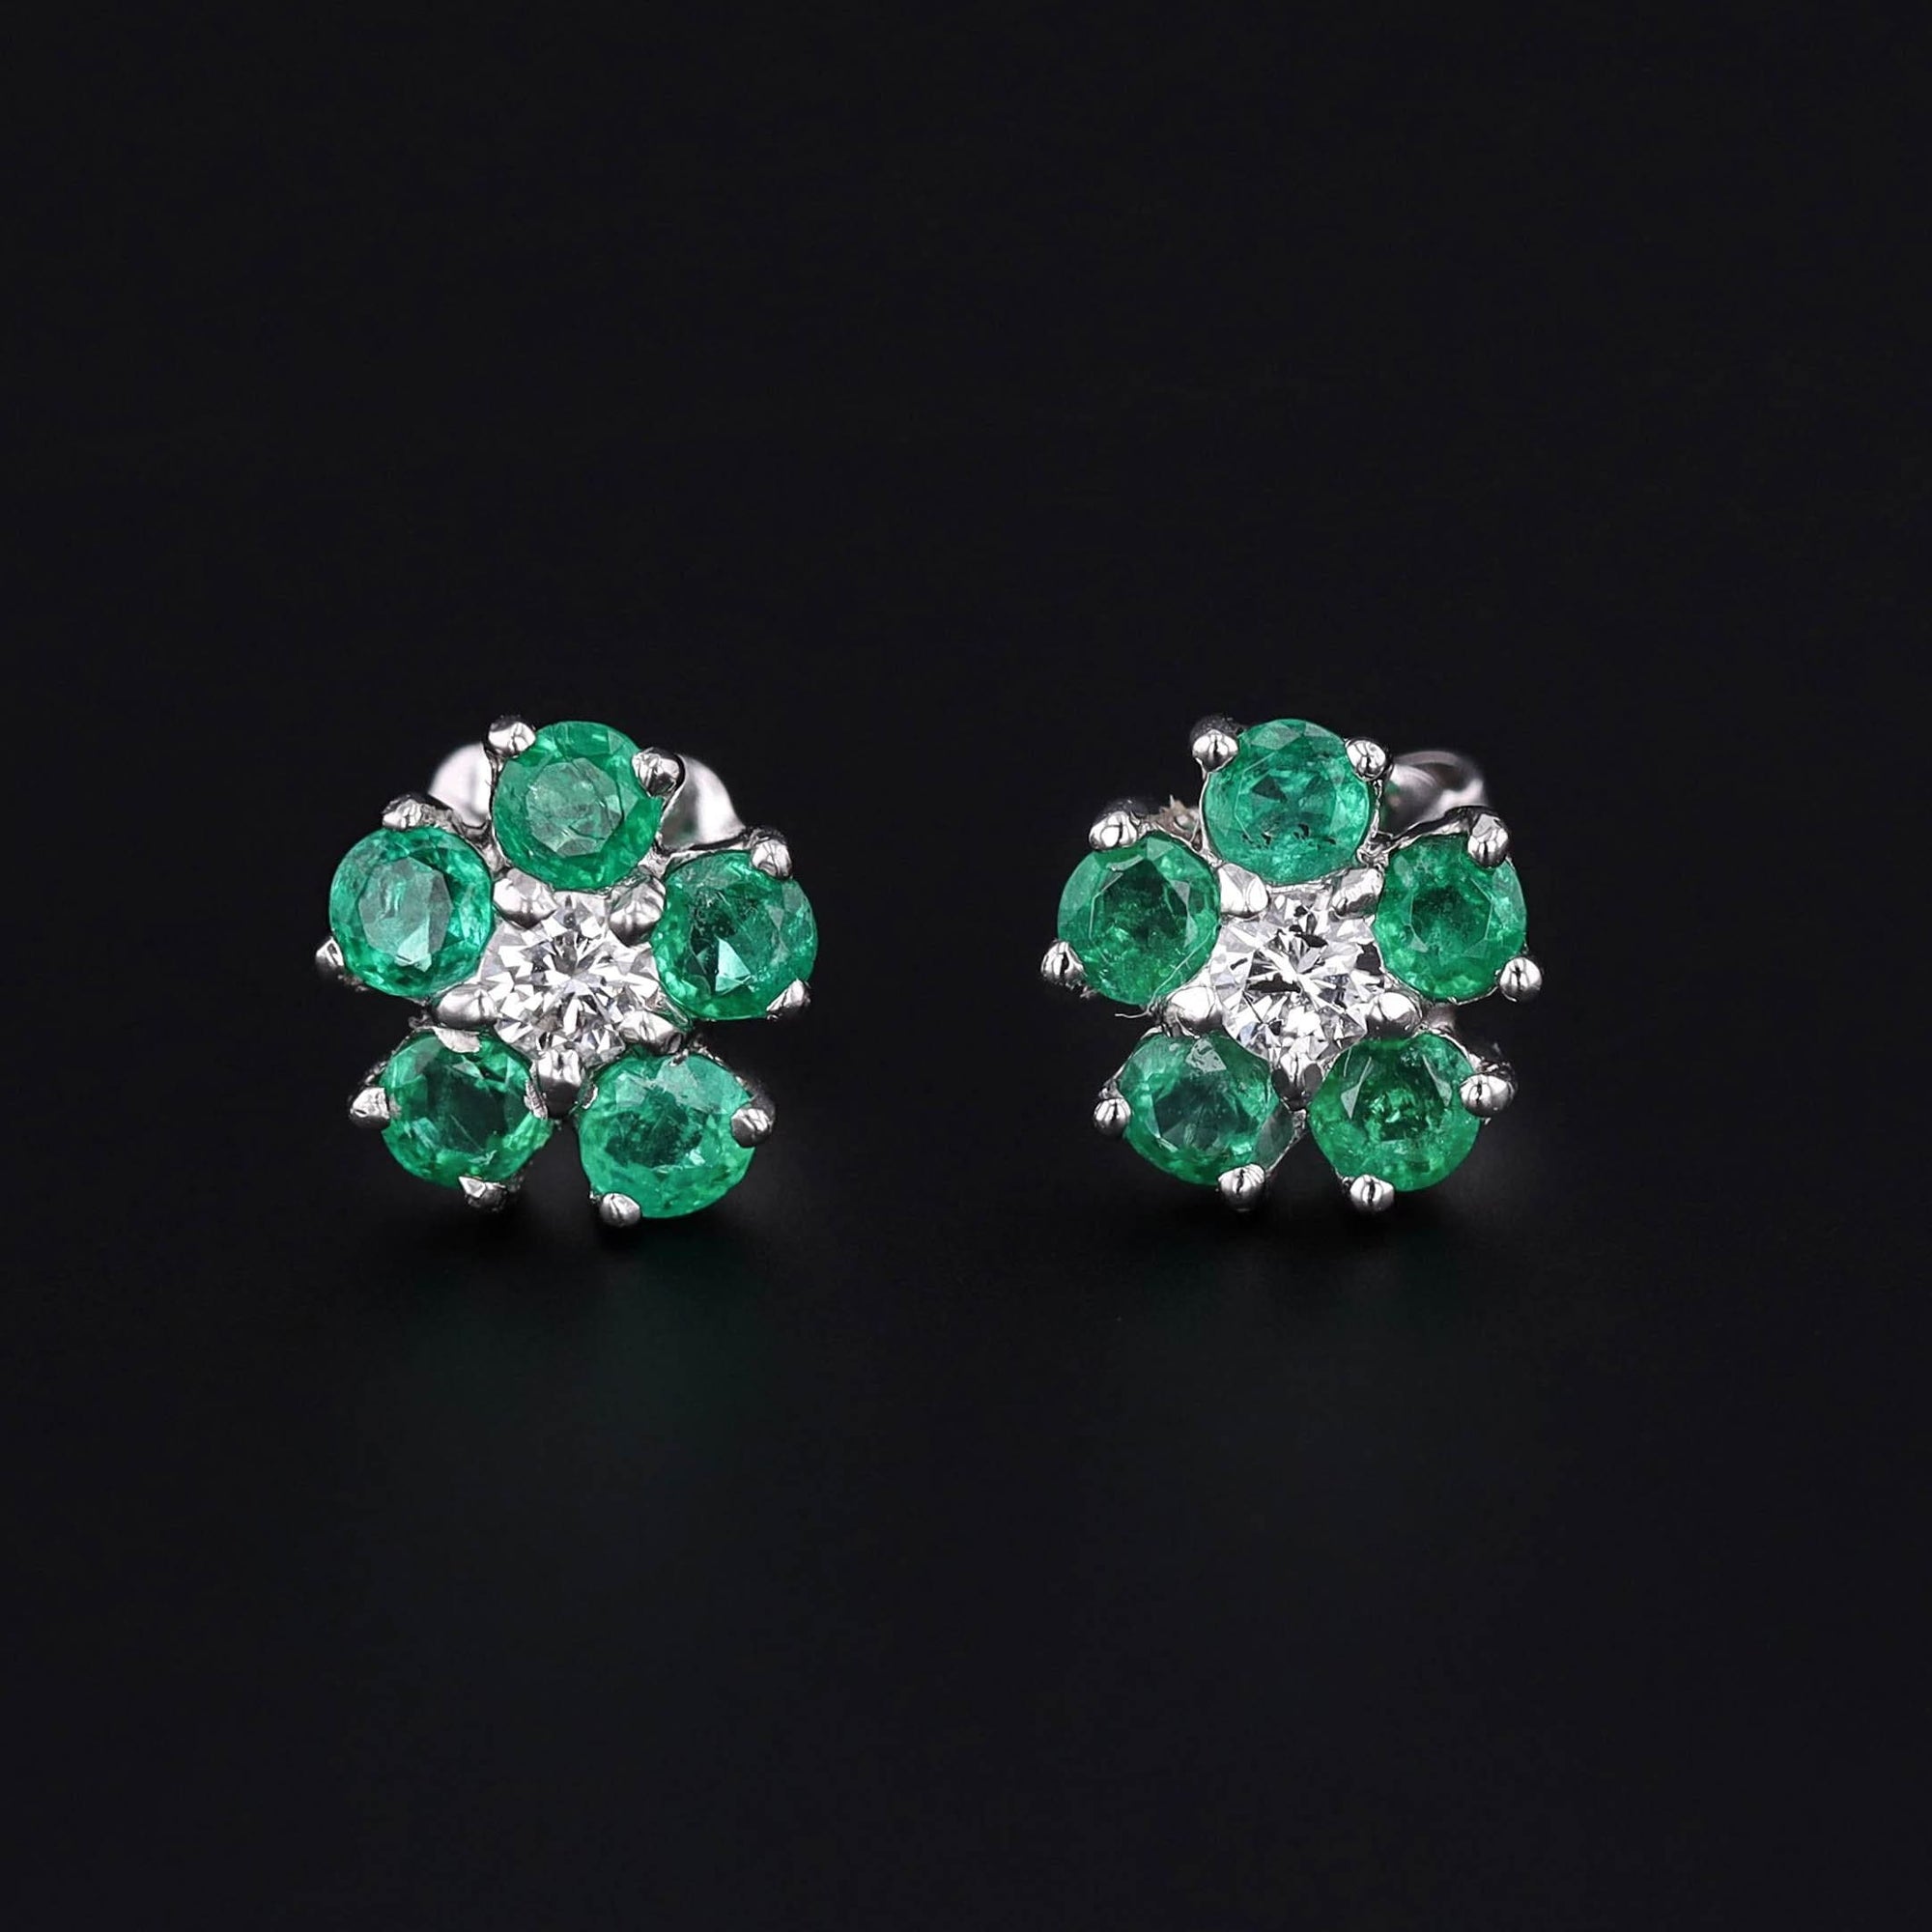 Emerald & Diamond Flower Earrings | Platinum and 14k White Gold Earrings 